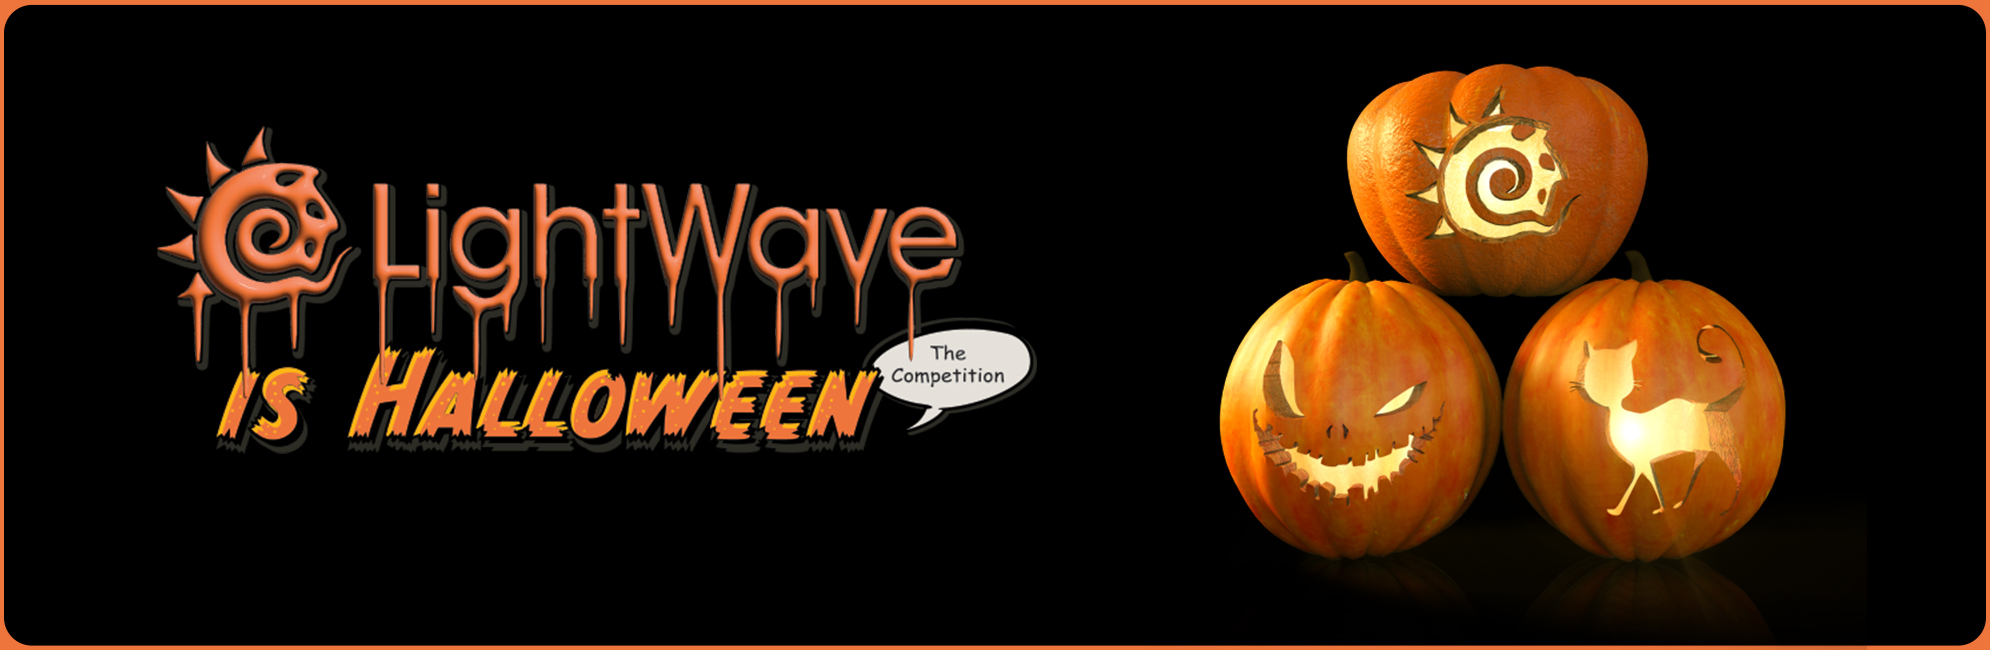 Nome: LightWave is Halloween  LightWave 3D Promo 20320918.jpg
Visite: 142
Dimensione: 387.4 KB